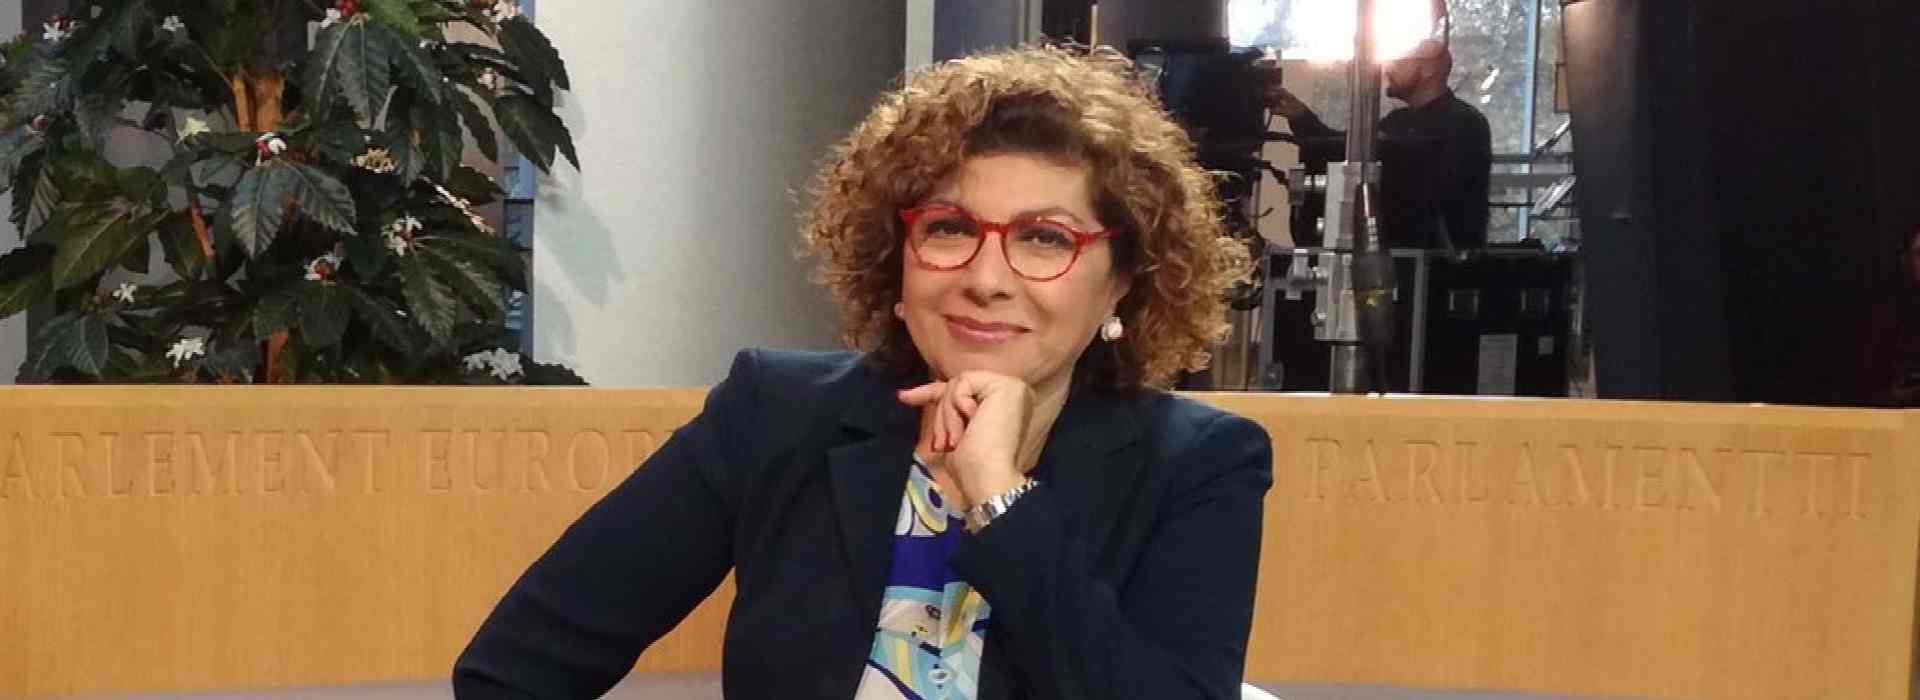 Michela Giuffrida, la giornalista assunta dalla Giunta di Nello Musumeci a 160mila euro. Mentre le imprese sono senza soldi